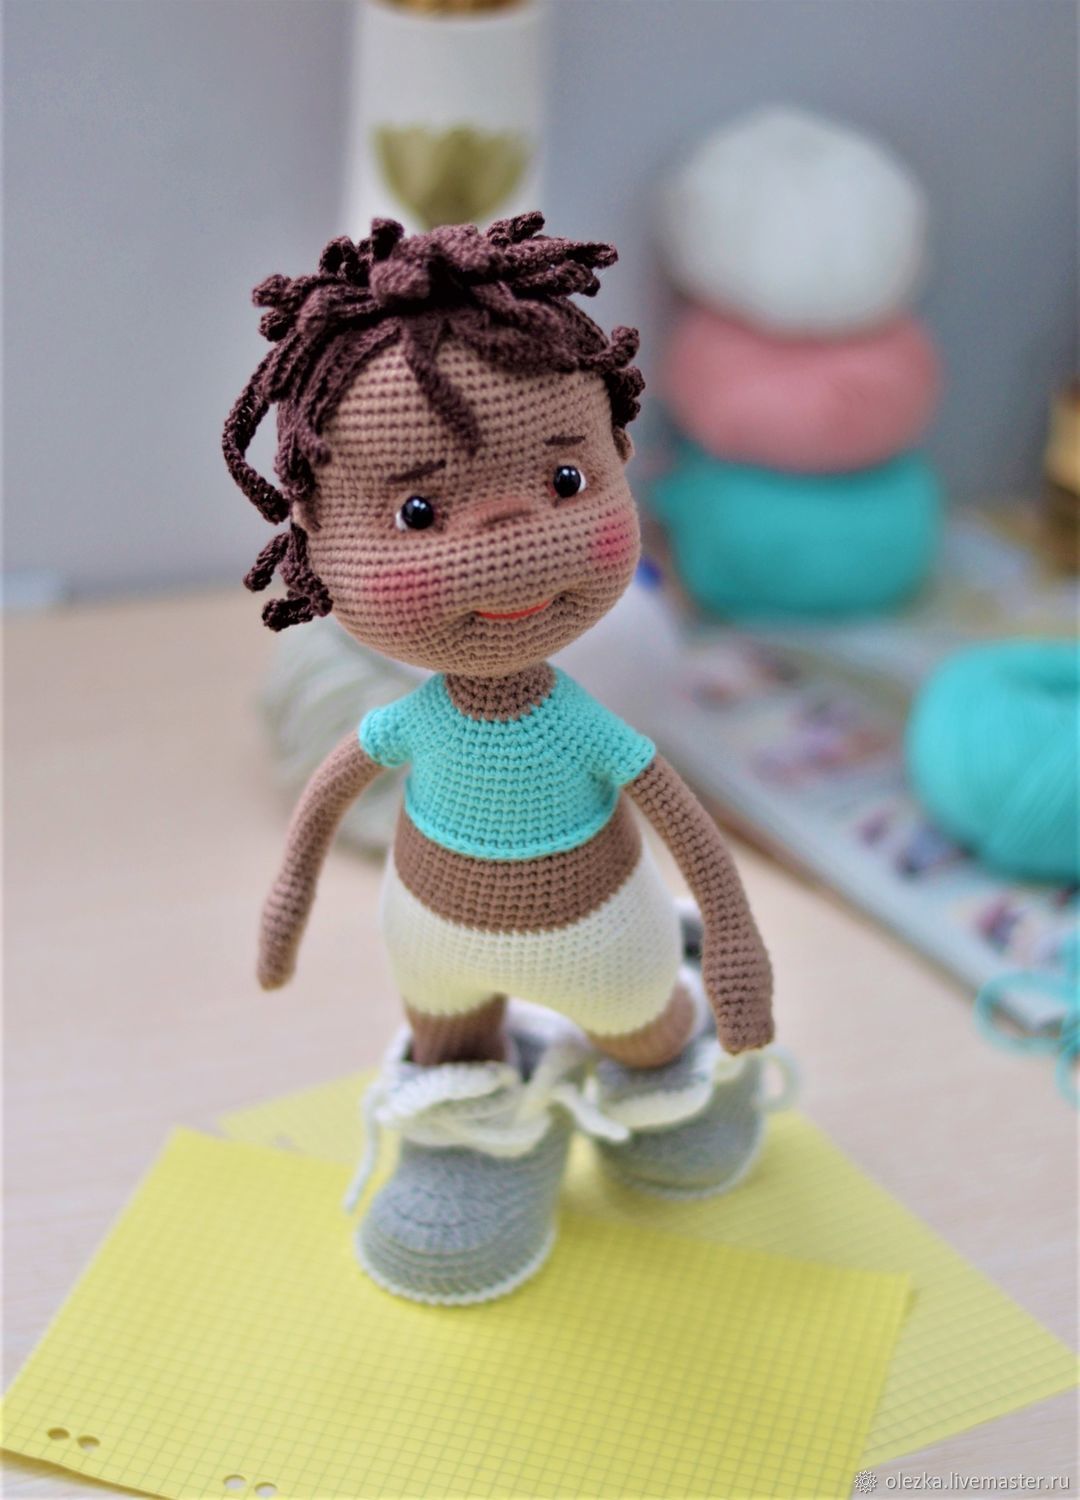 Вязаные куклы крючком для начинающих — создаем альтернативу фабричным игрушкам своими руками